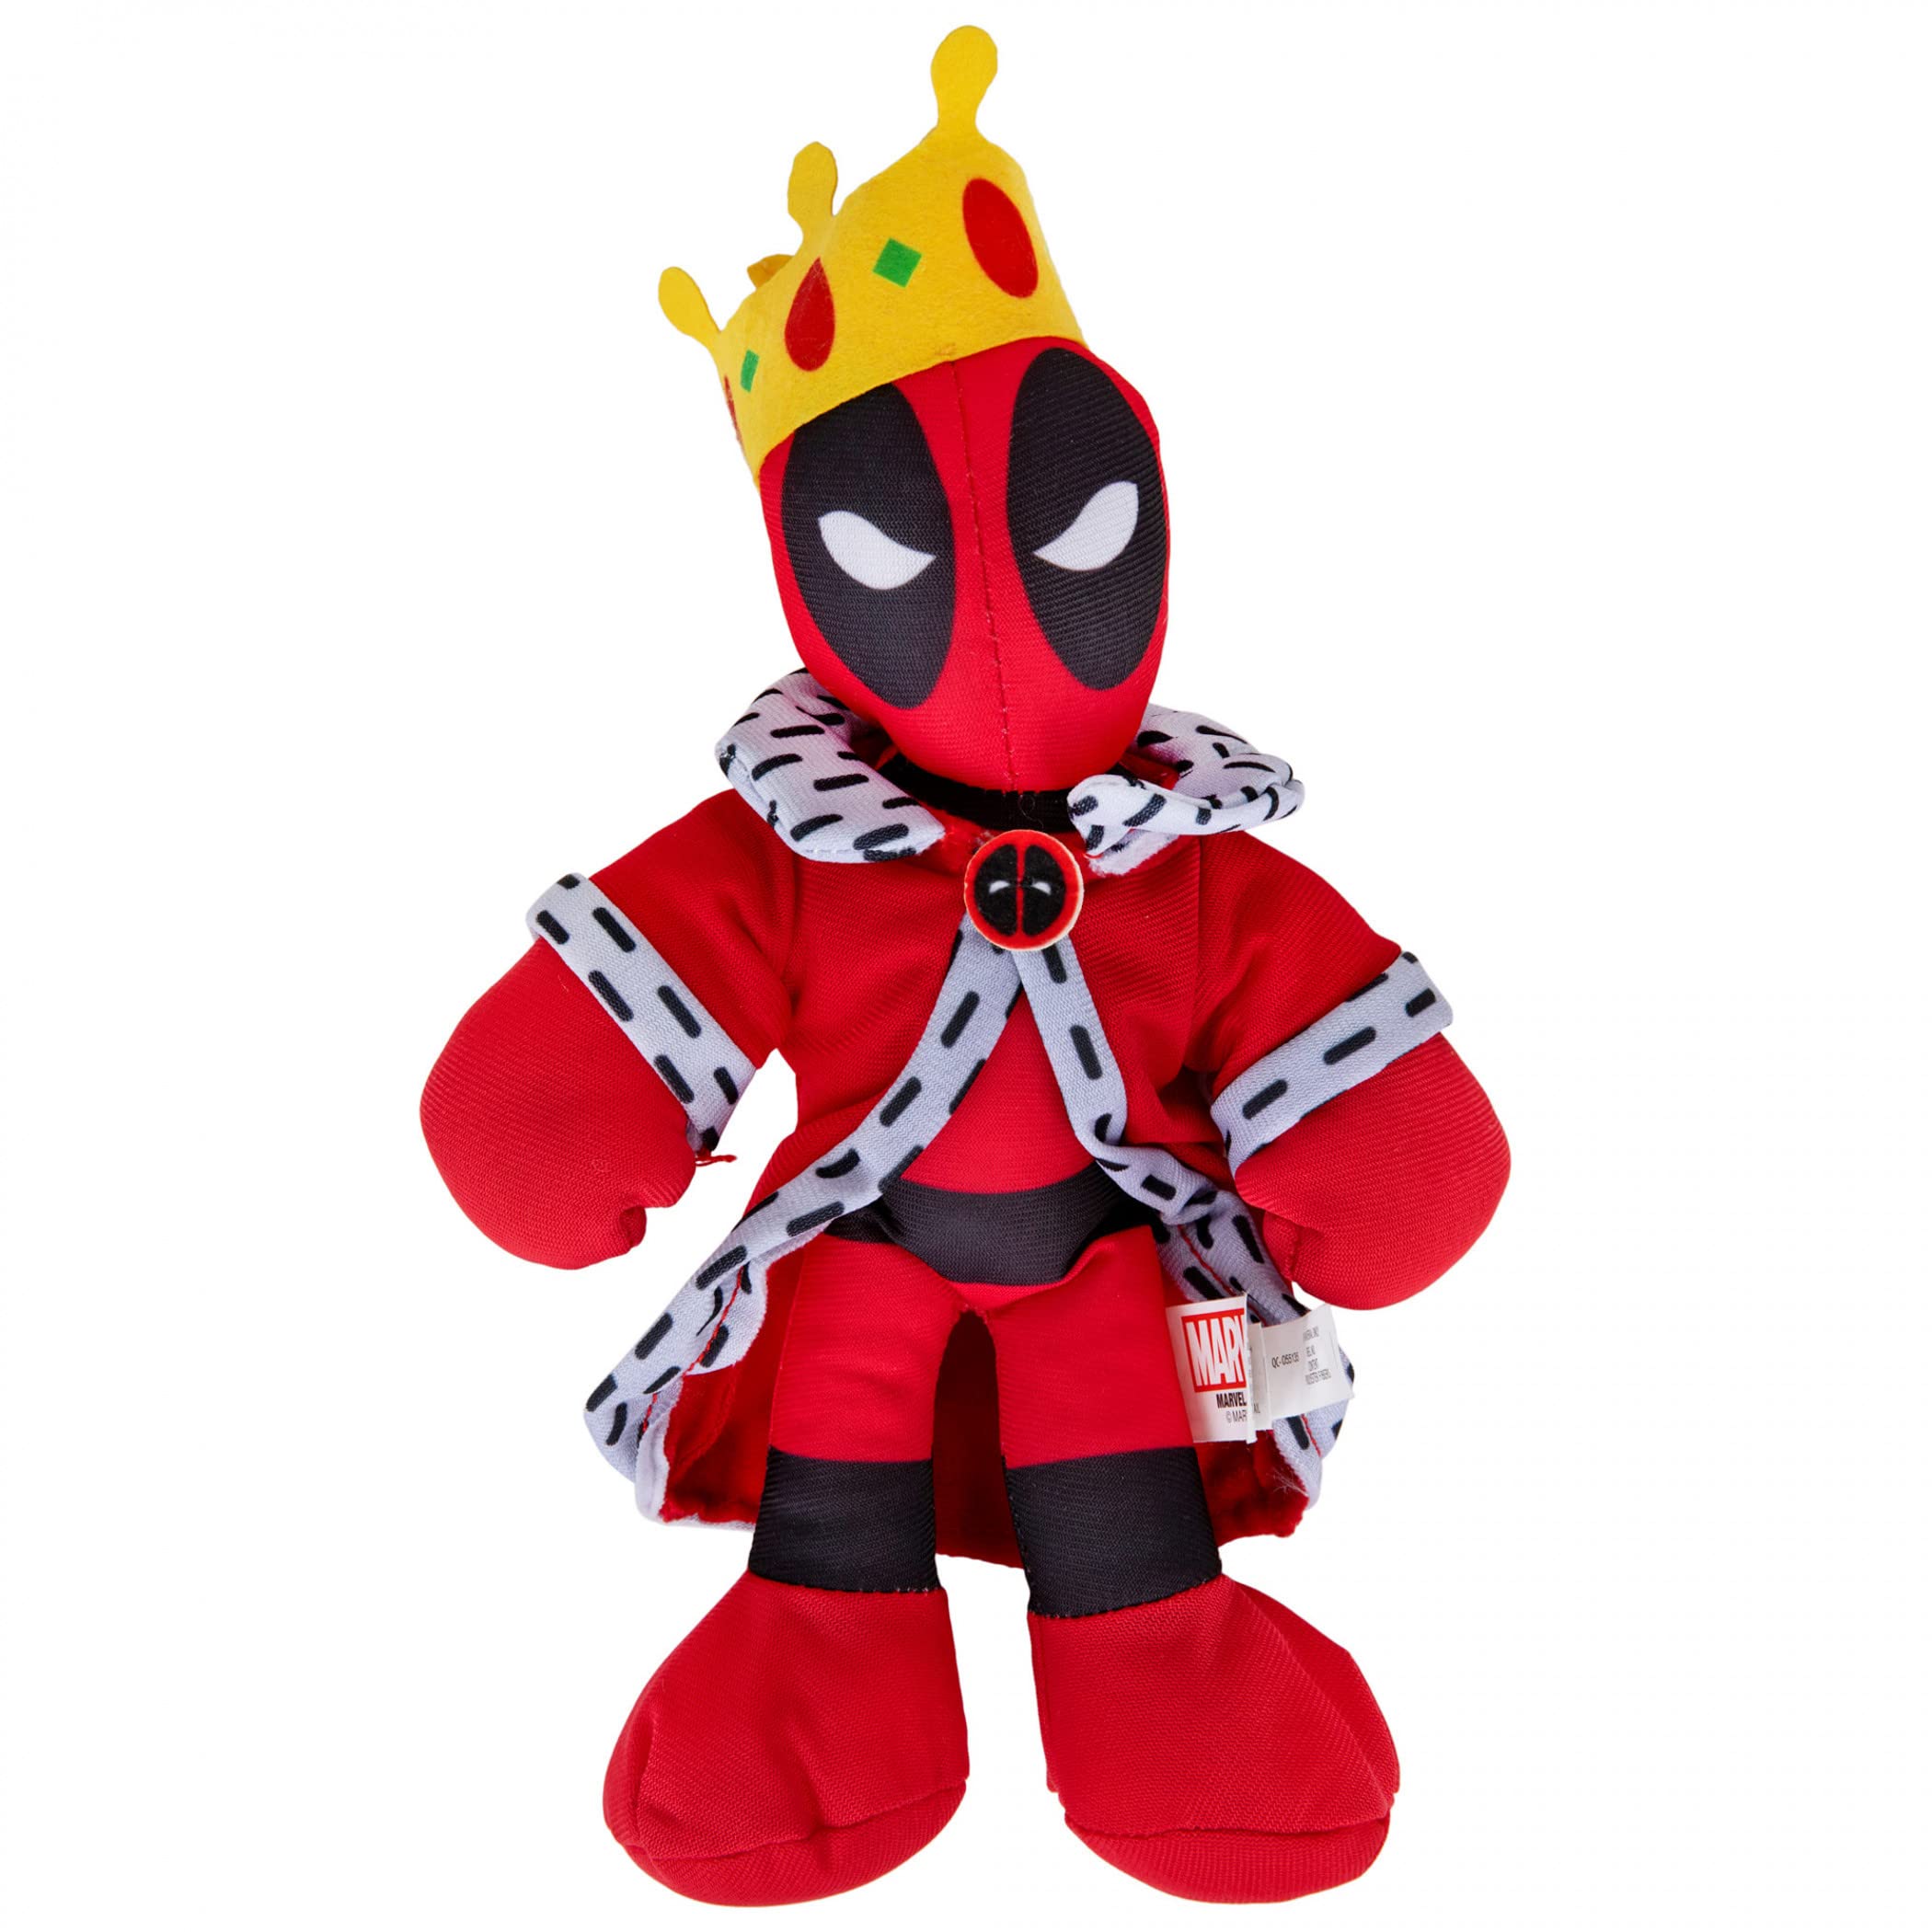 Deadpool The Royal King Plush